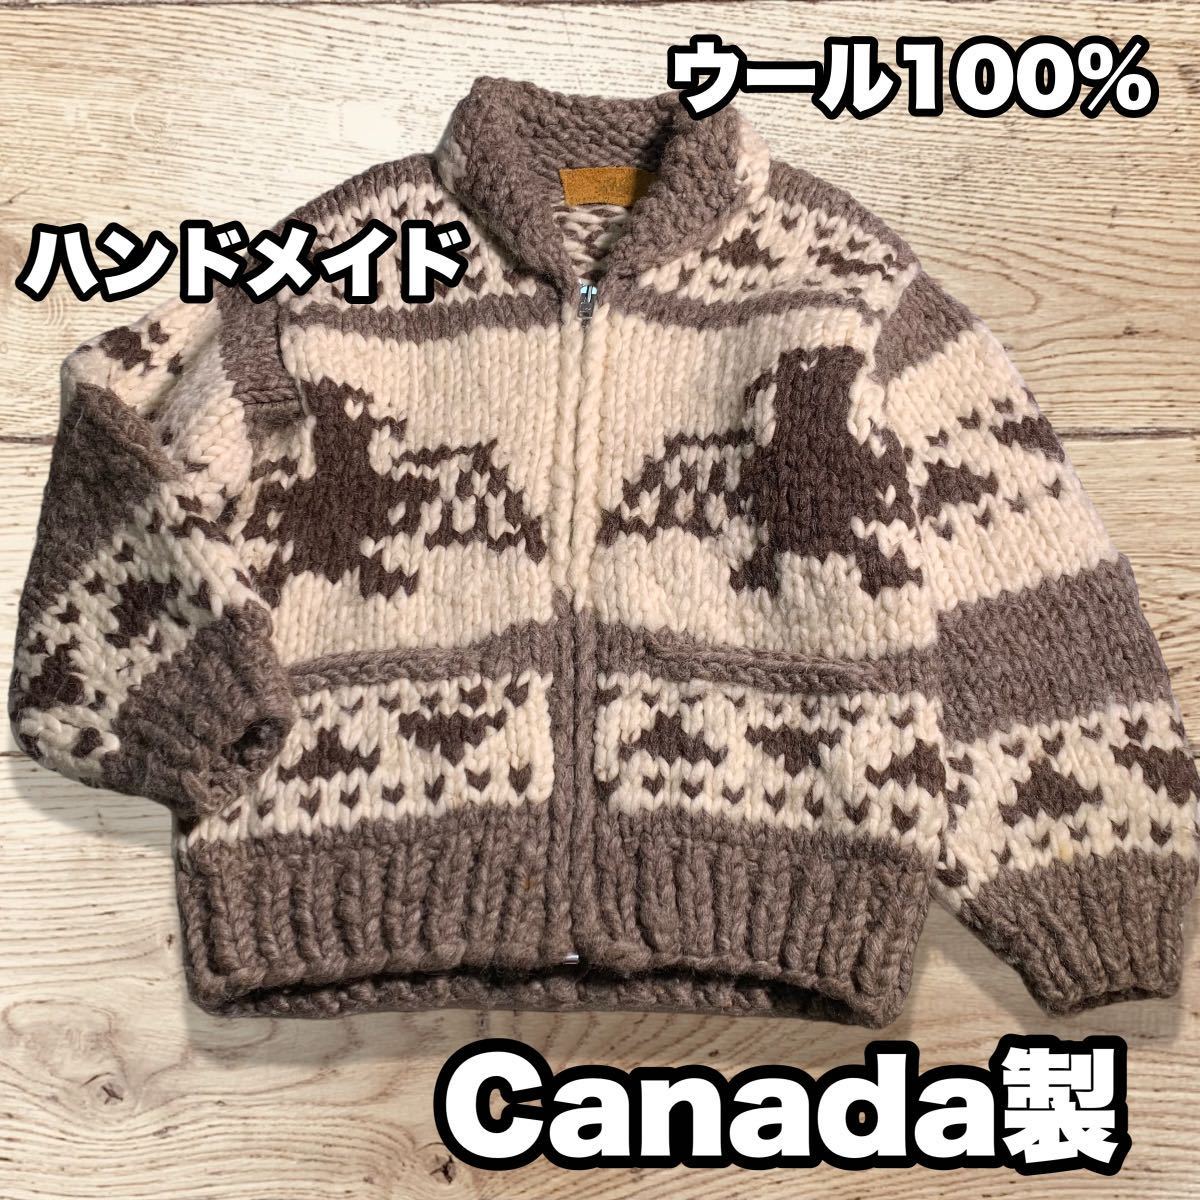 カナダ製 ハンドメイド カナディアンニット セーター ブルゾン ウール